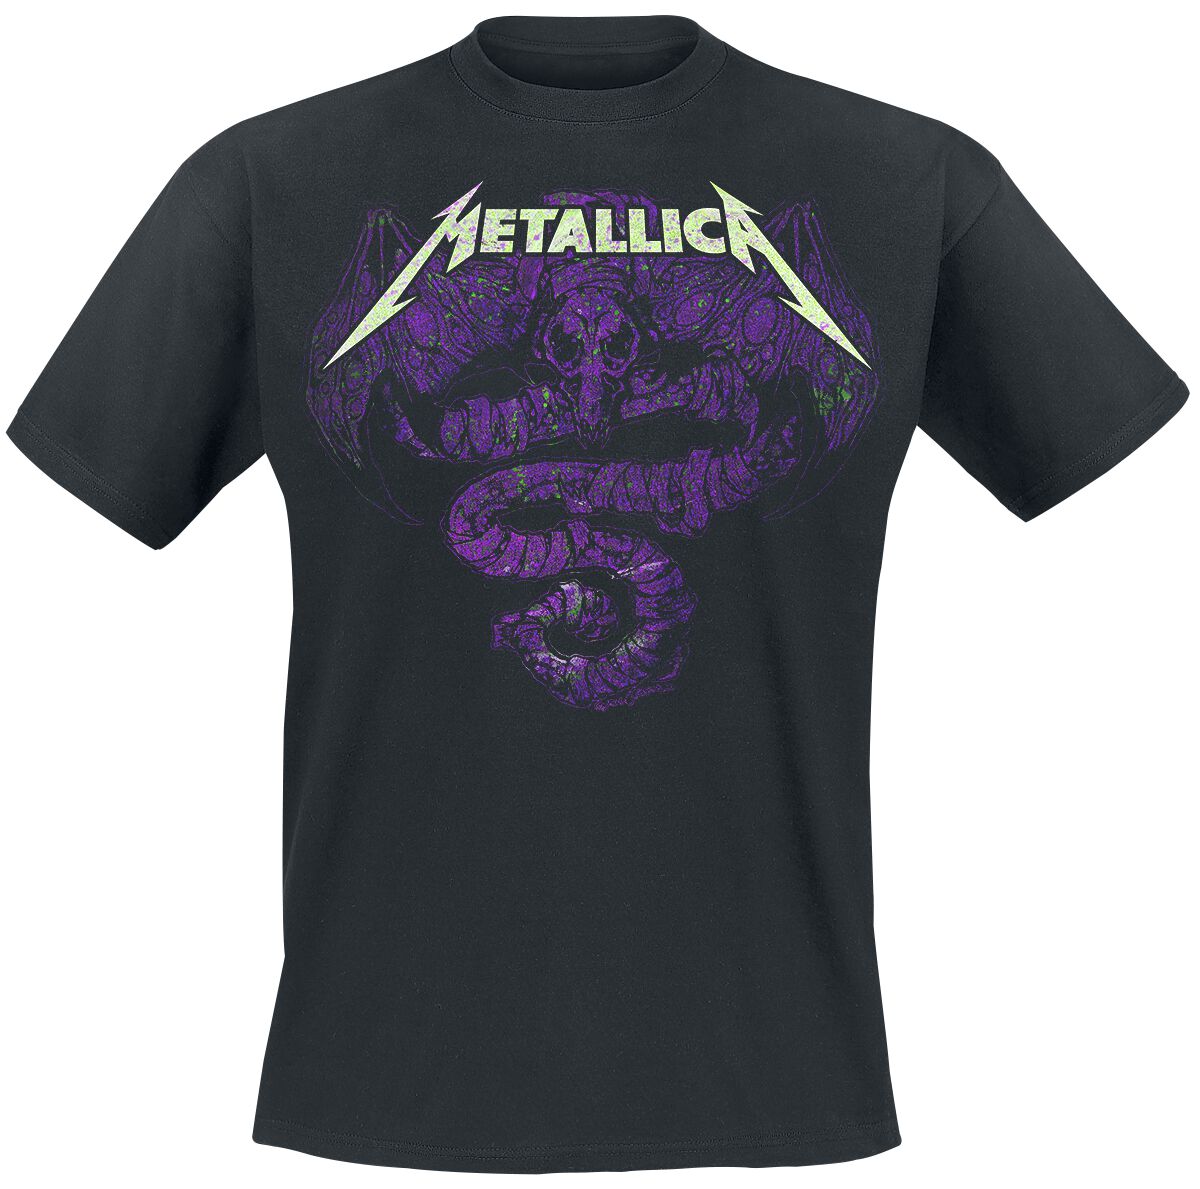 Metallica T-Shirt - Roam Oxidized - M bis XXL - für Männer - Größe L - schwarz  - Lizenziertes Merchandise!